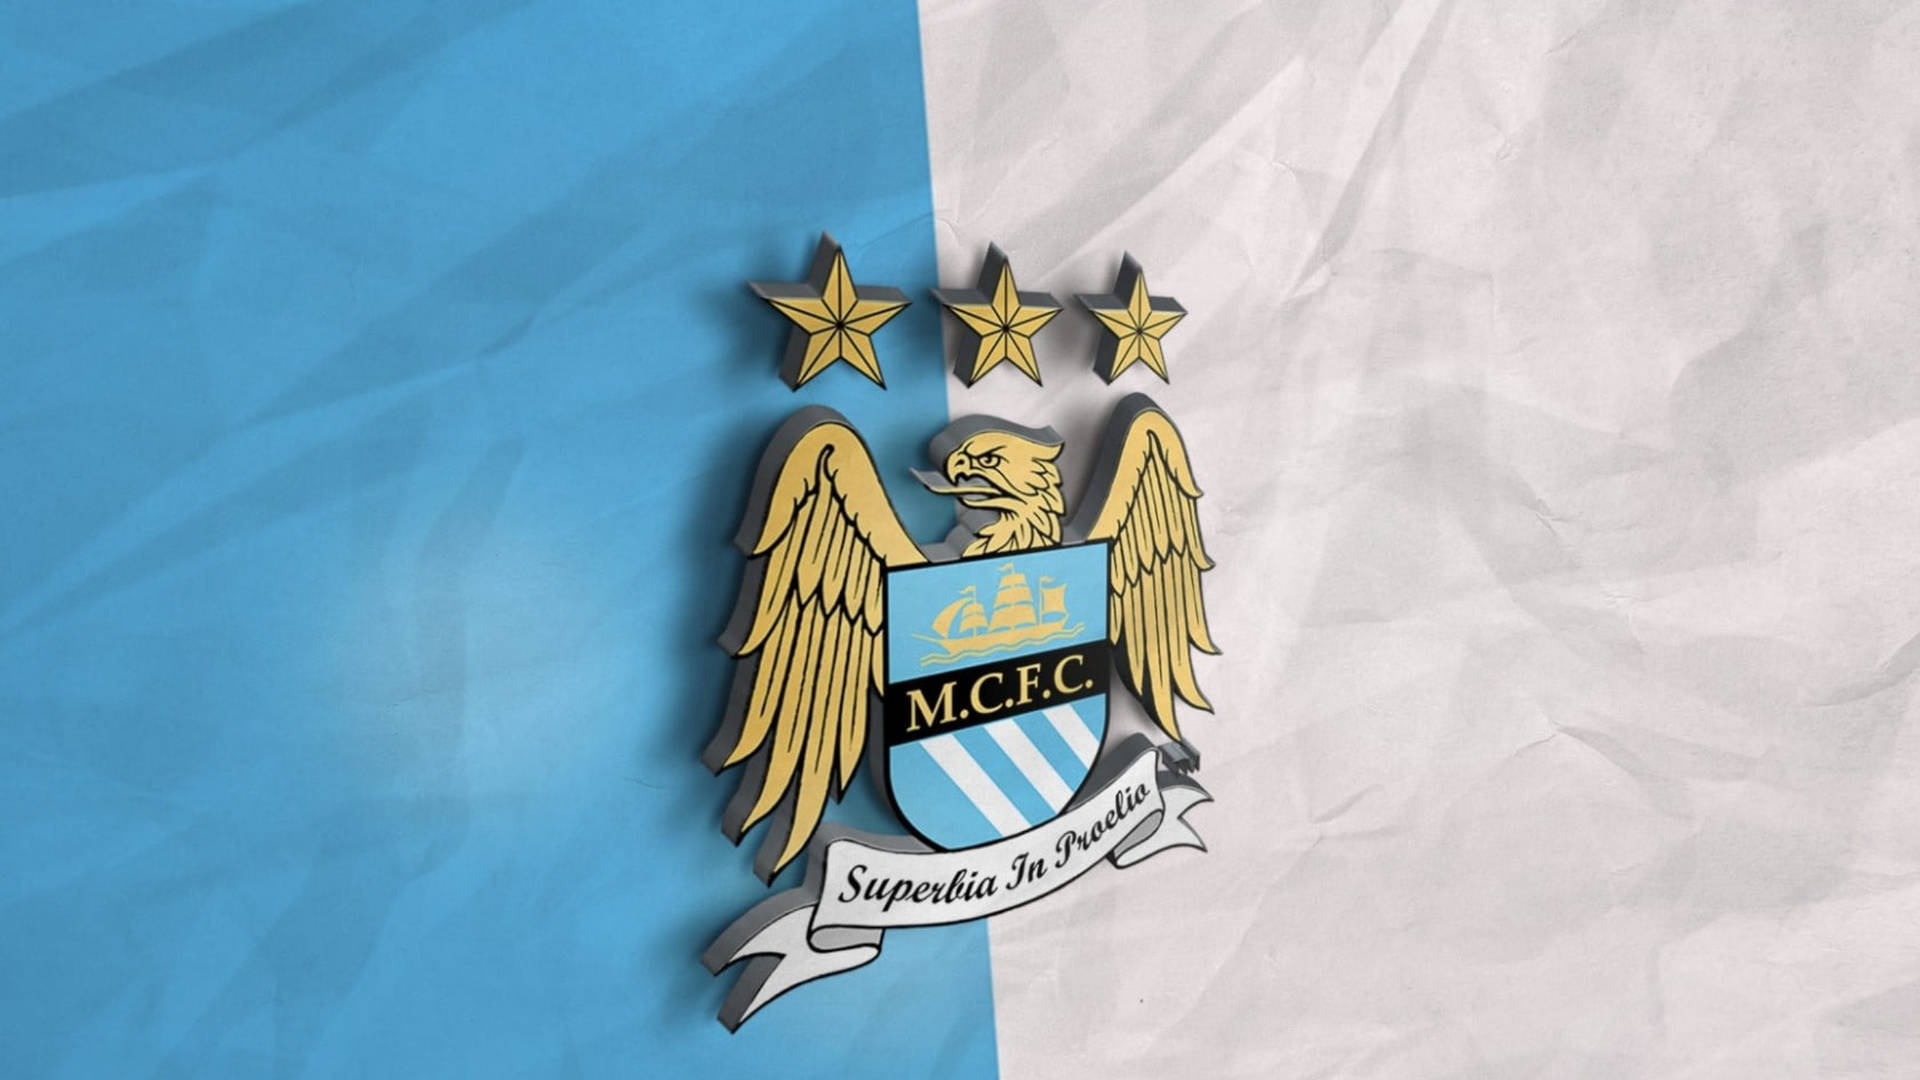 Manchester City Emblem with Premier League Recognition Wallpaper